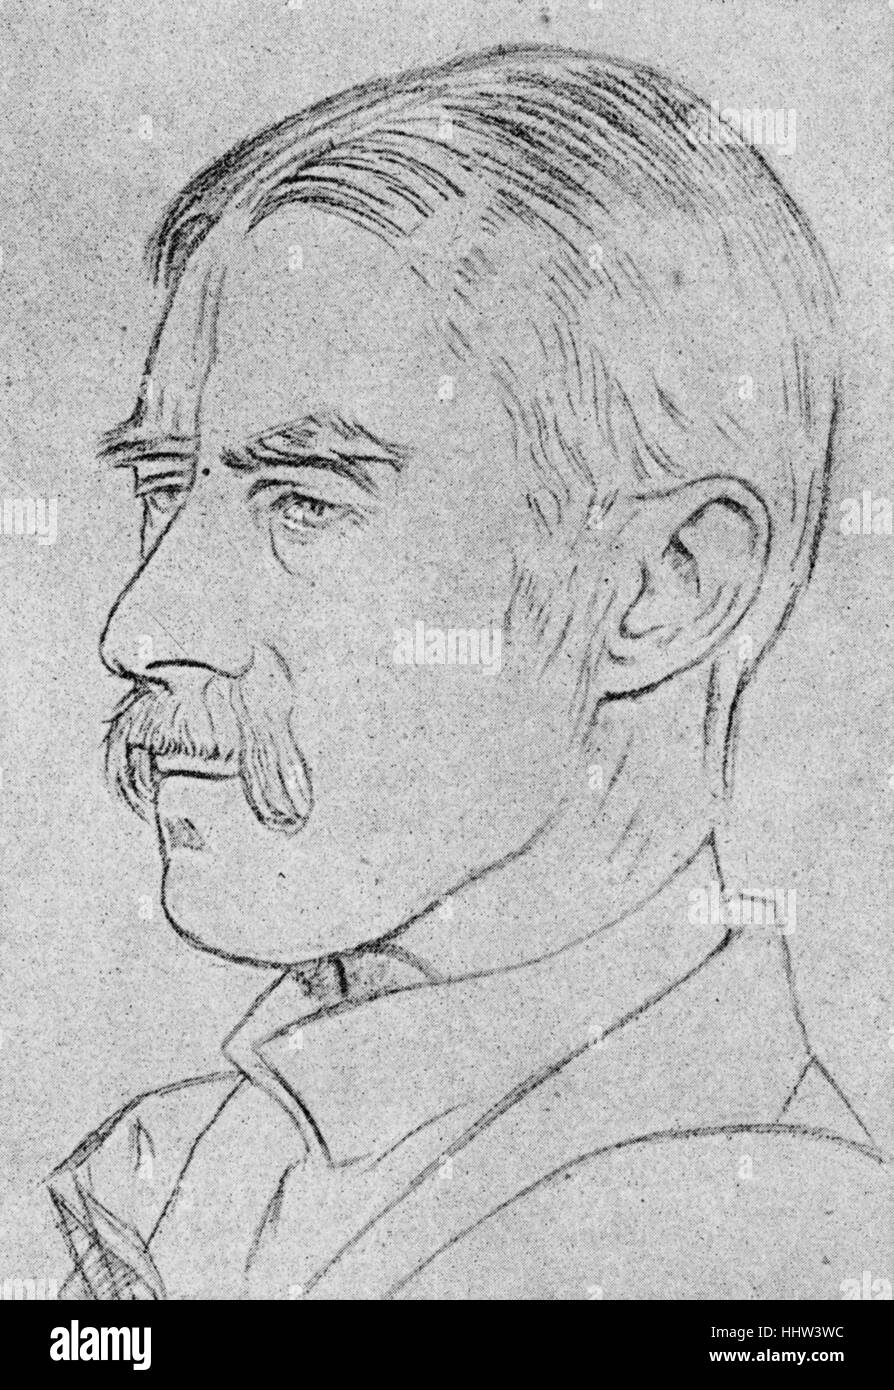 Un E (Alfred Edward Housman) - poète anglais et disciple classique : 26 mars 1859 - 30 avril 1936. D'après un dessin de William Banque D'Images